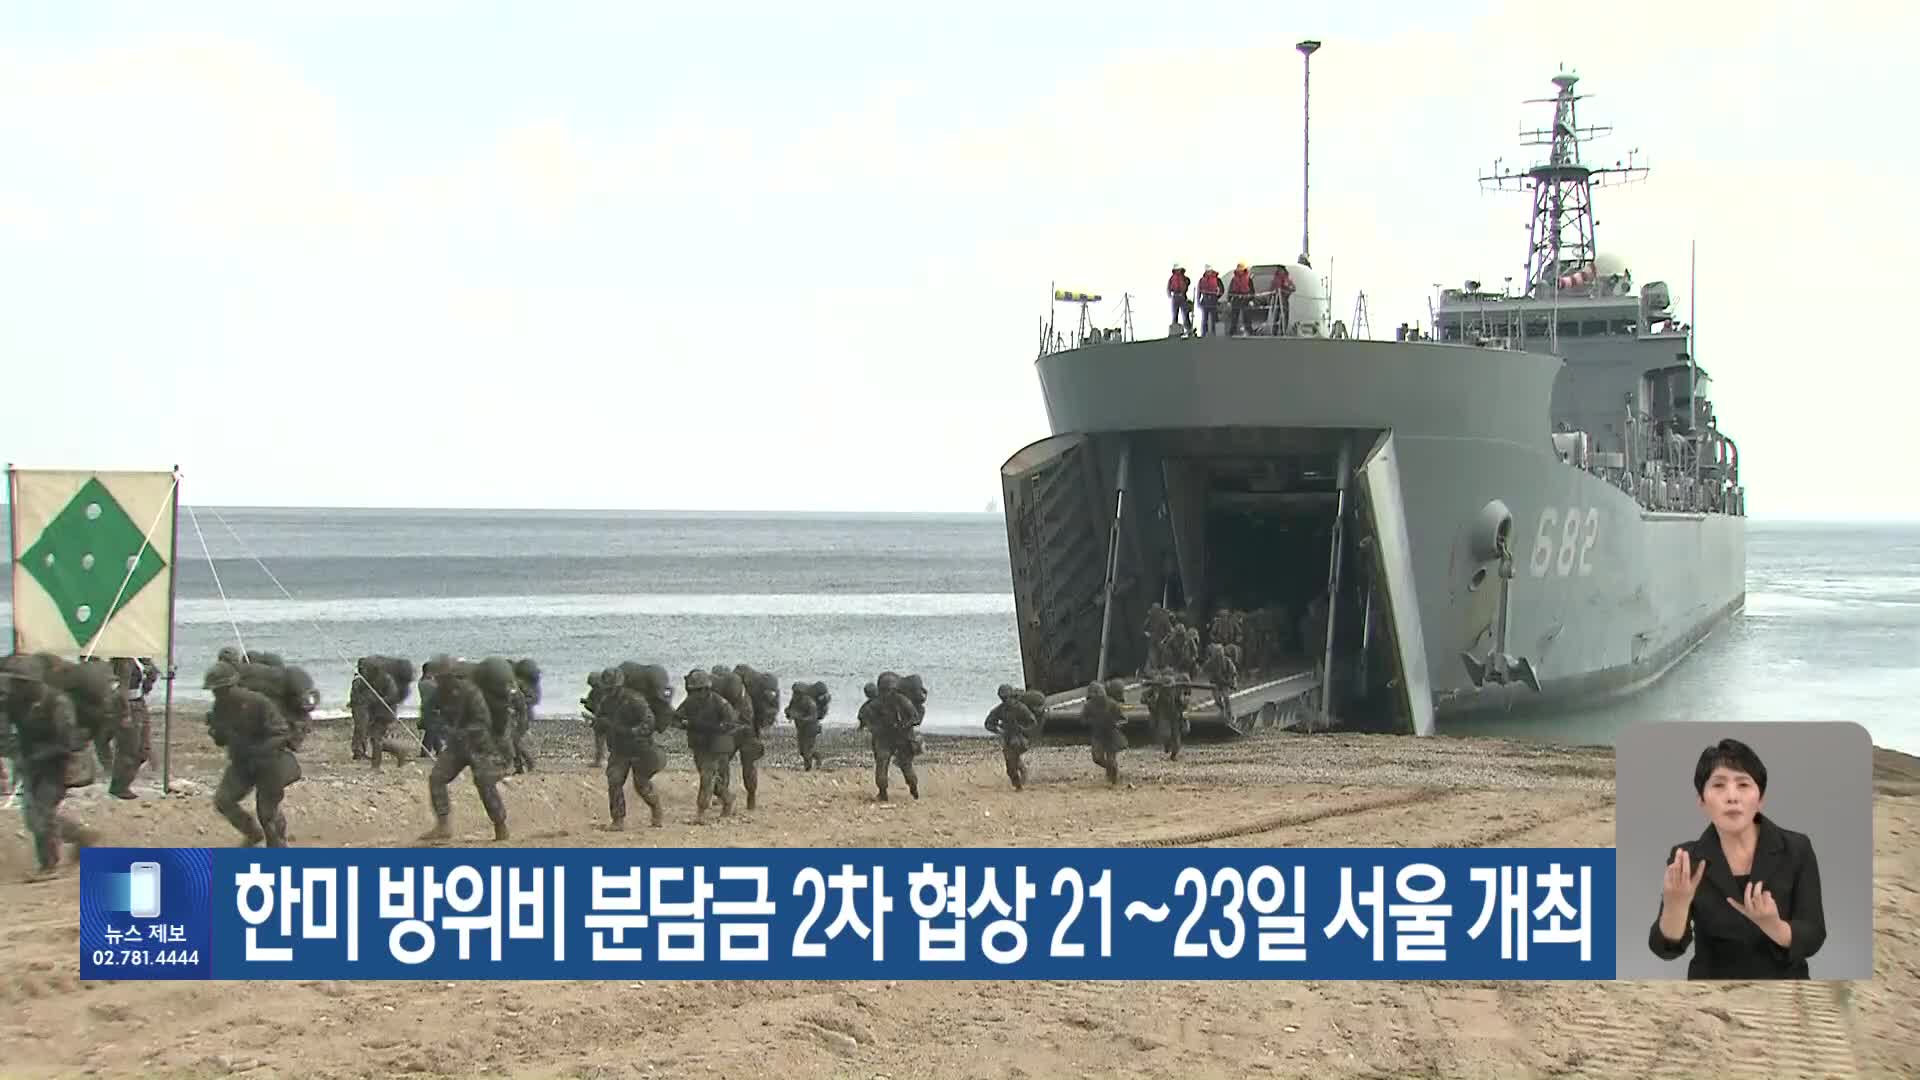 한미 방위비 분담금 2차 협상 21~23일 서울 개최